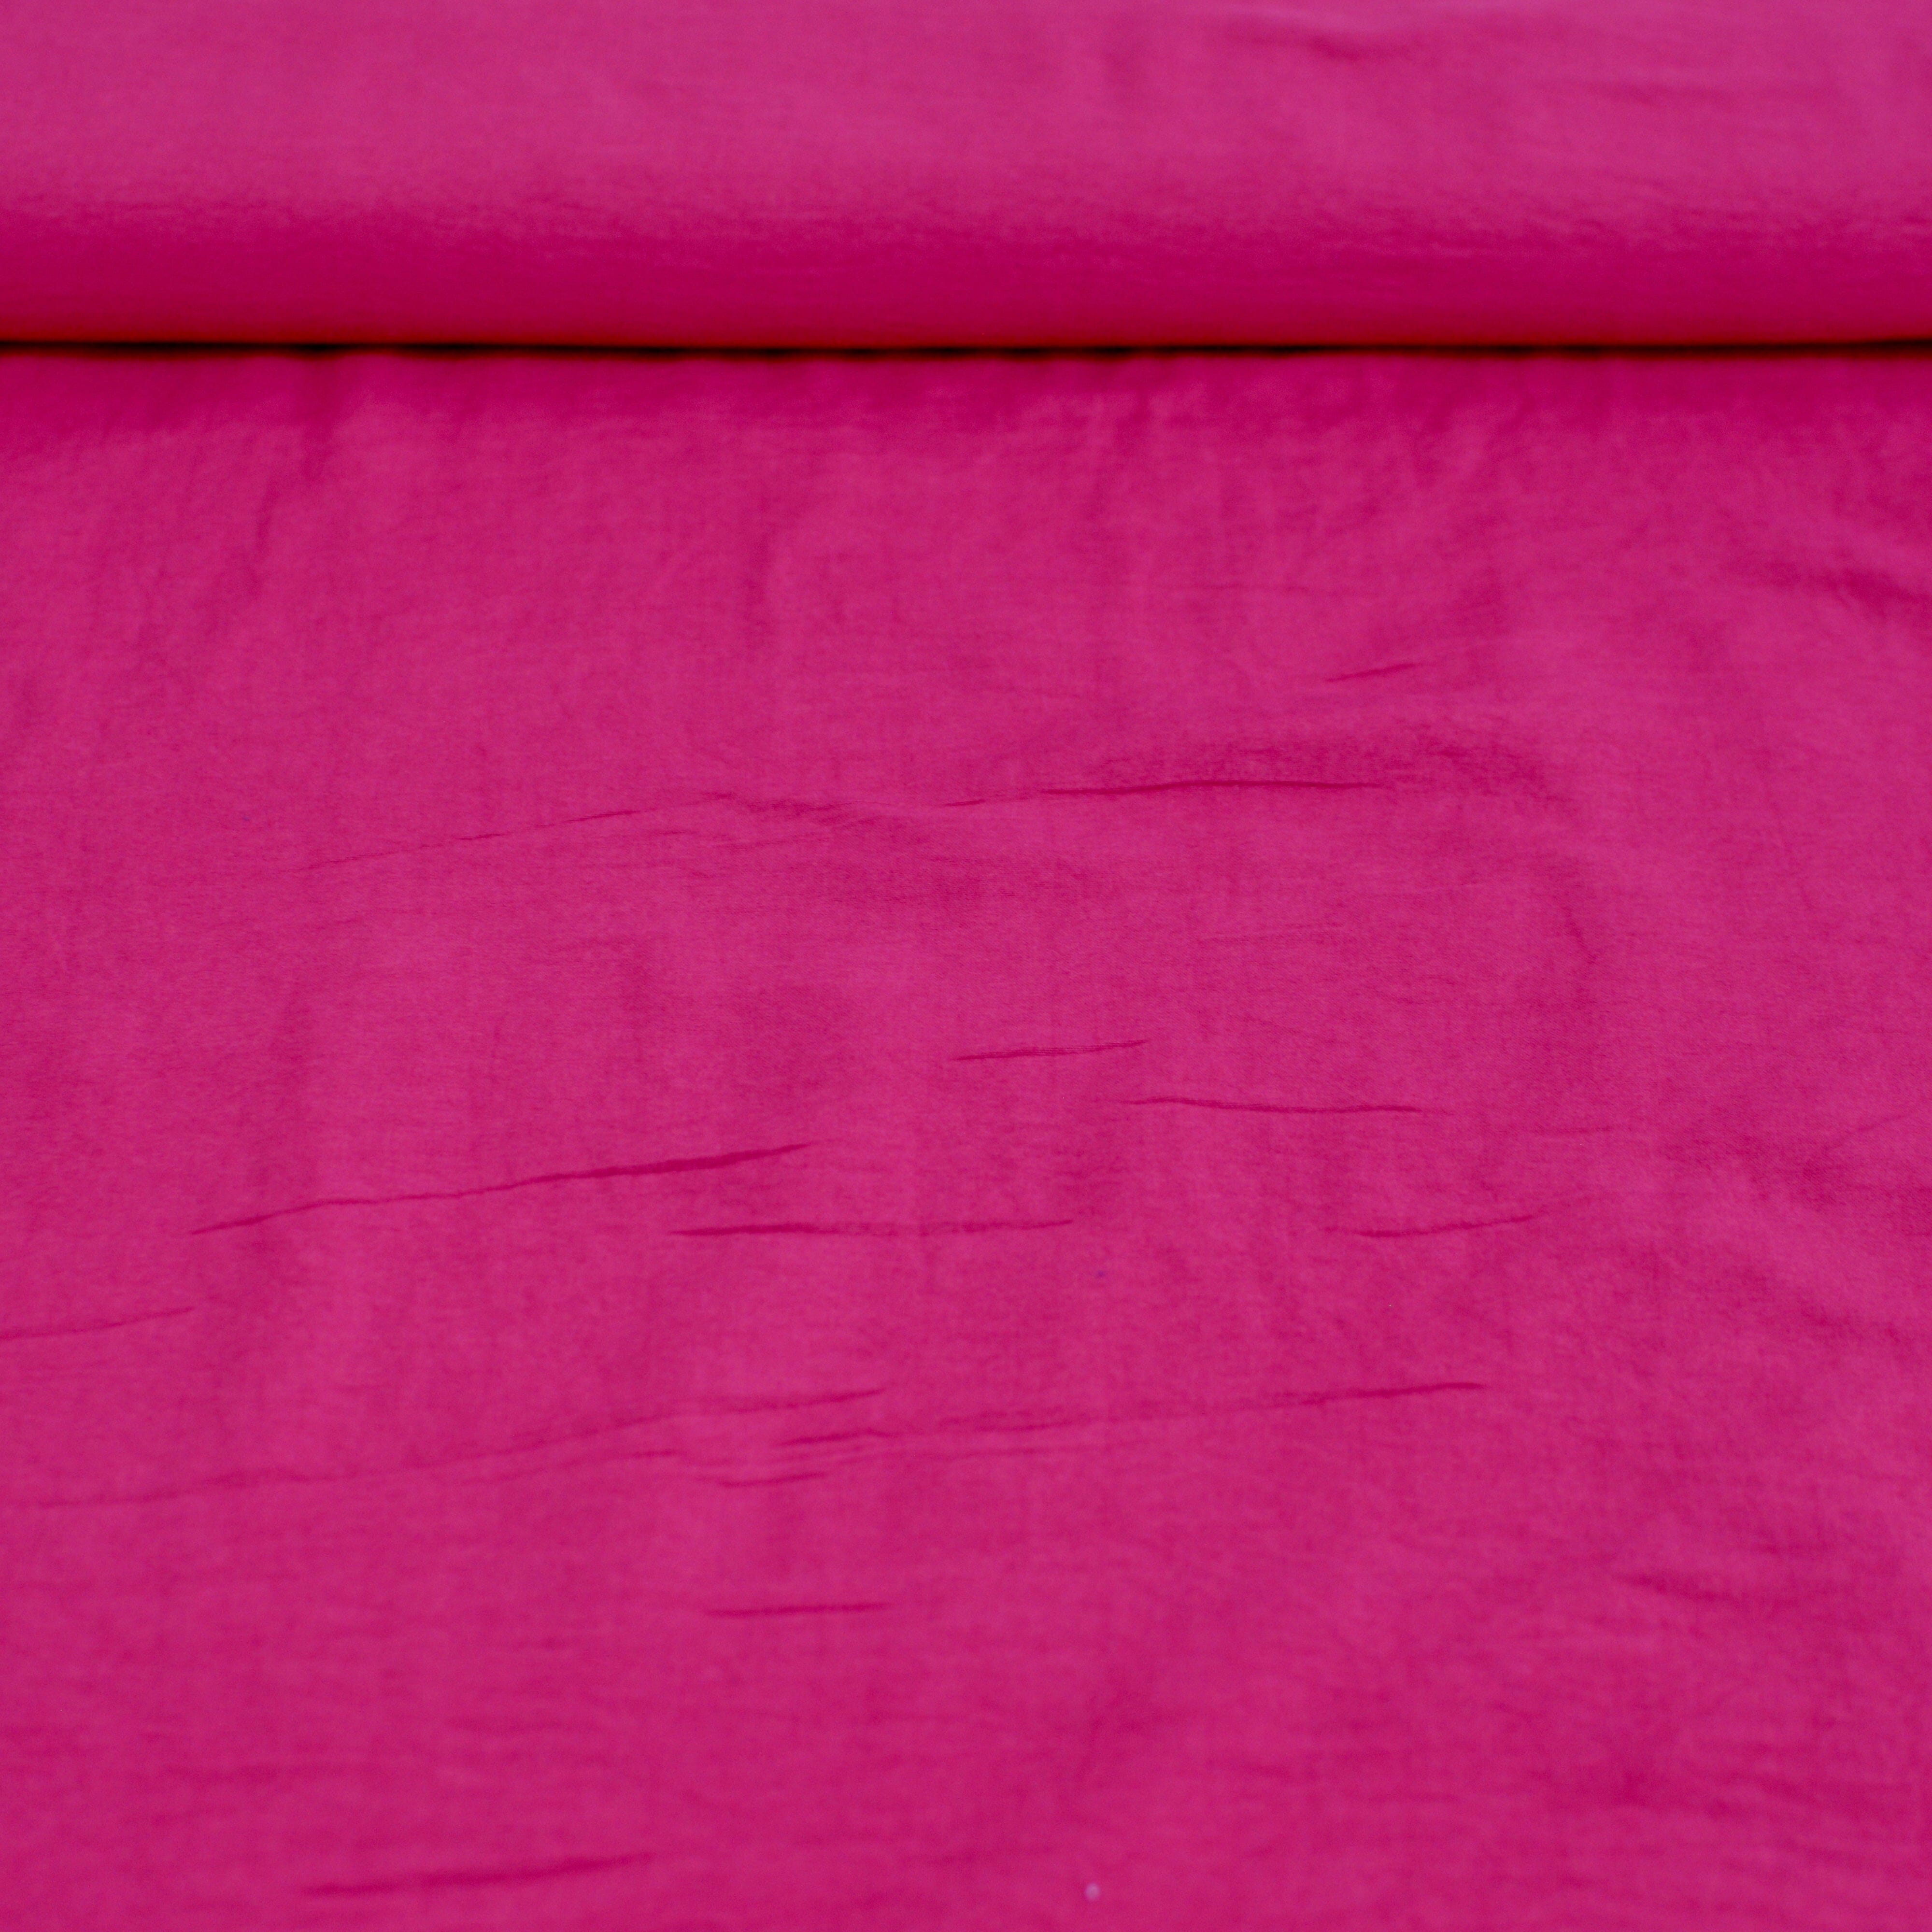 Reststück 2,2m! Classy knitterarme Webware Velvet Touch - knallpinkä Fabric poshpinks